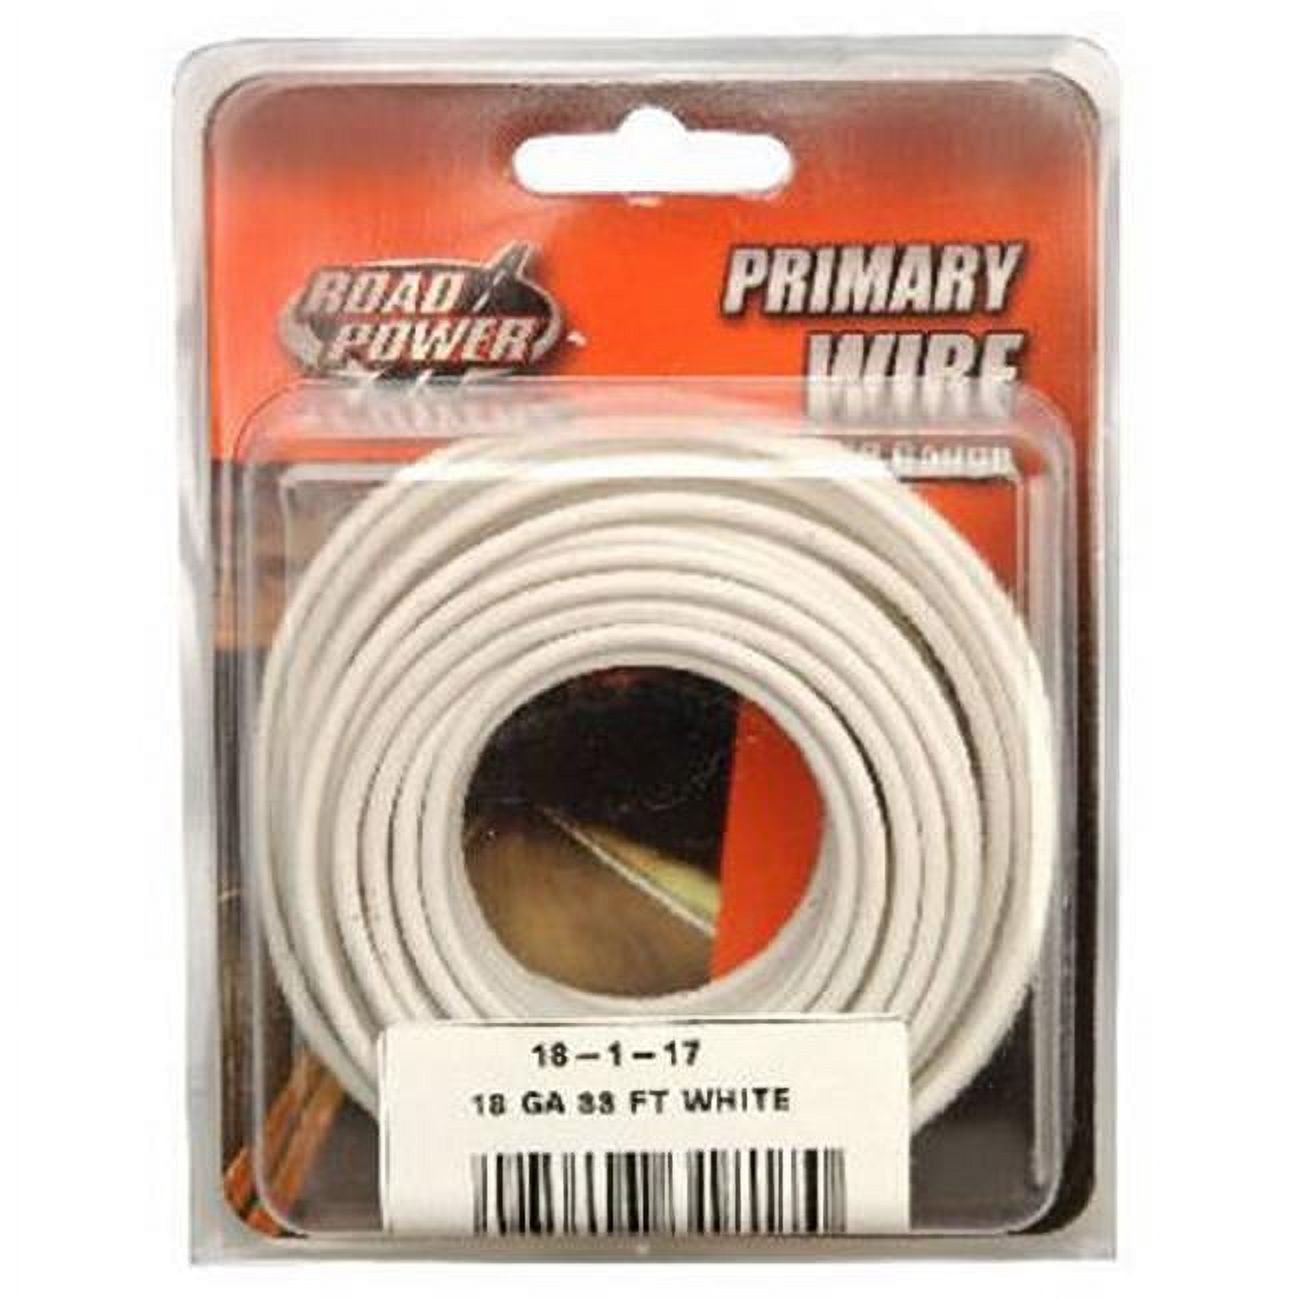 Primary Wire, White, 18-Ga., 33-ft.